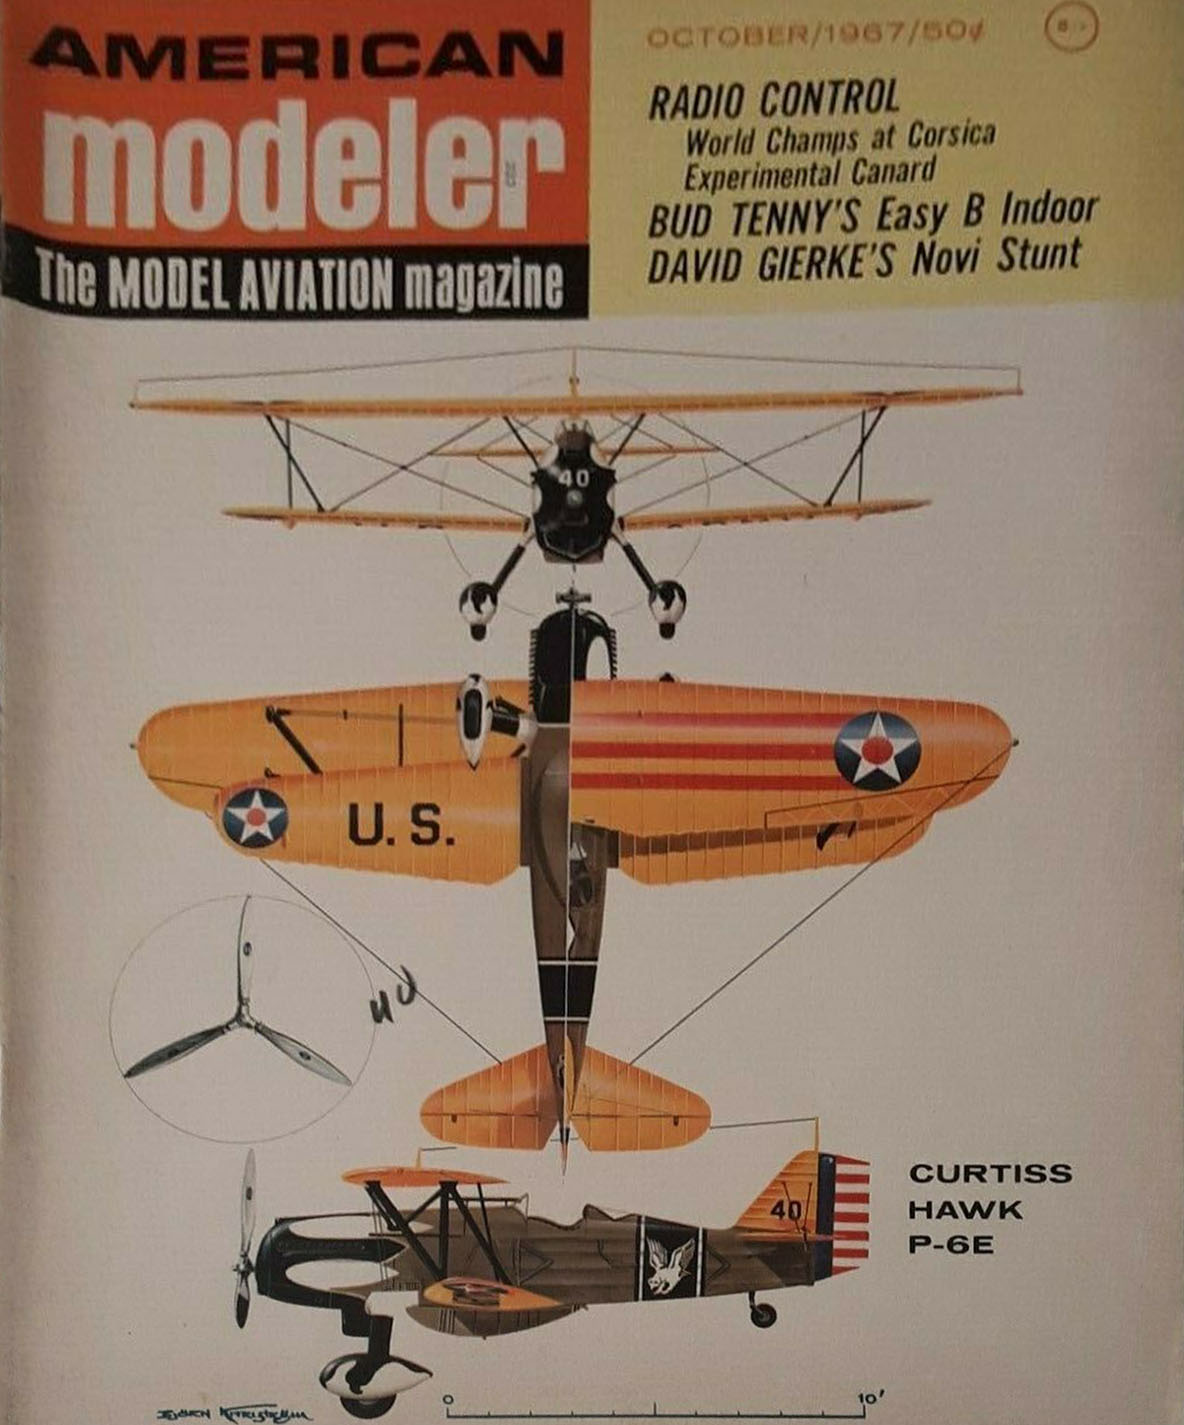 American Modeler October 1967 magazine back issue American Modeler magizine back copy 